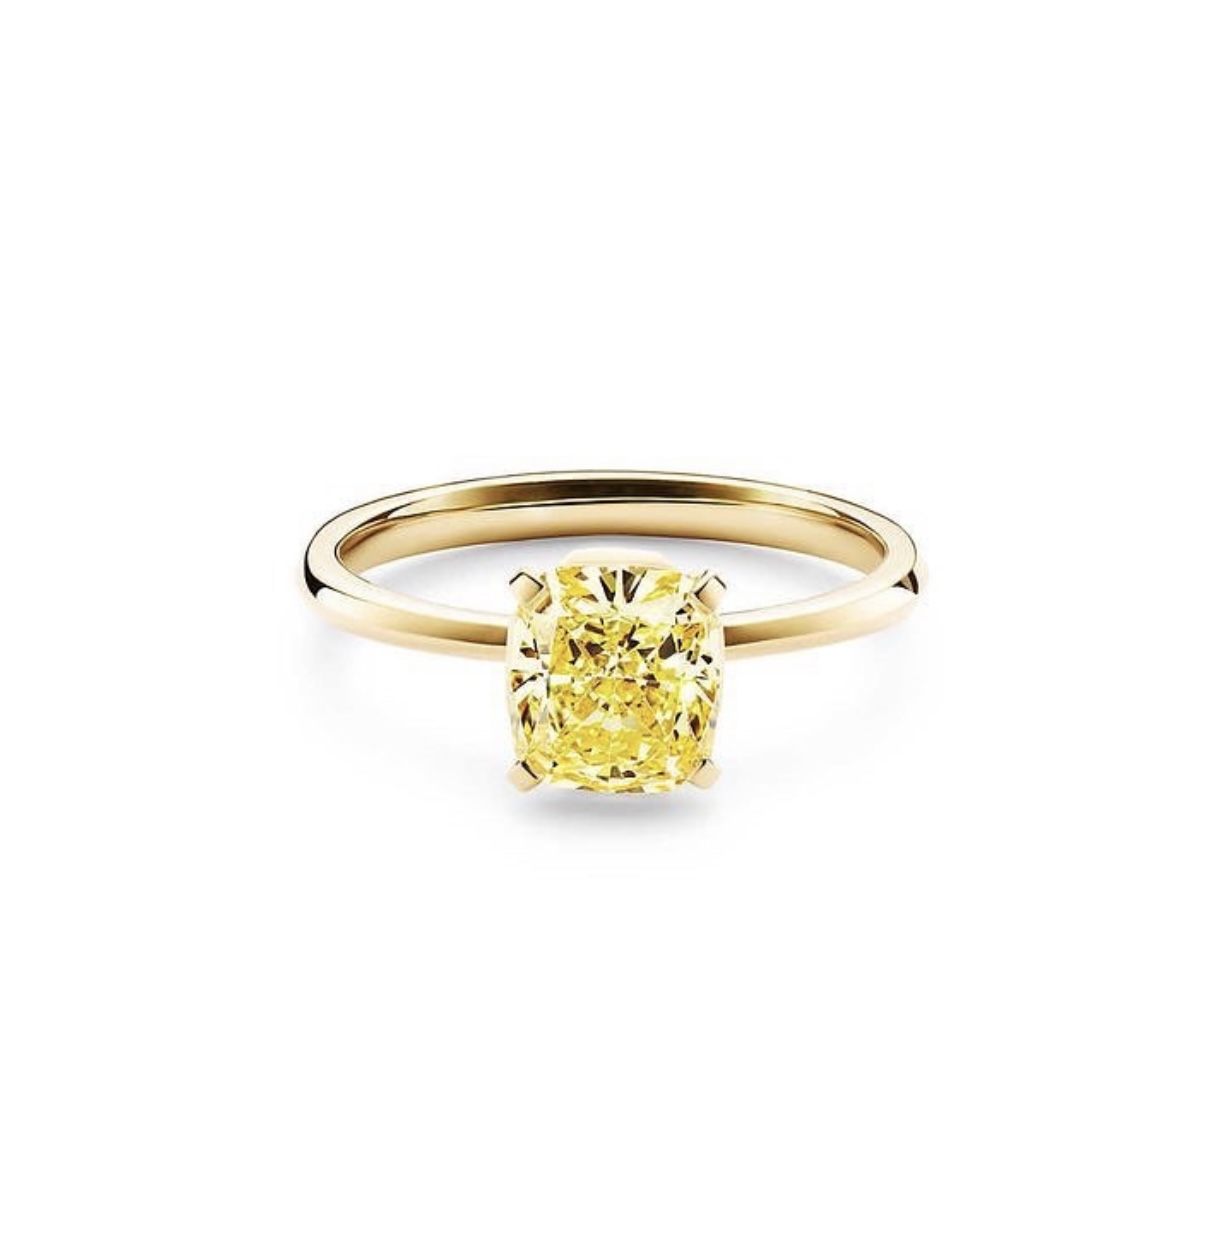 Кольцо с жёлтым бриллиантом огранки «Кушон»(0,50 ct.) из золота 750